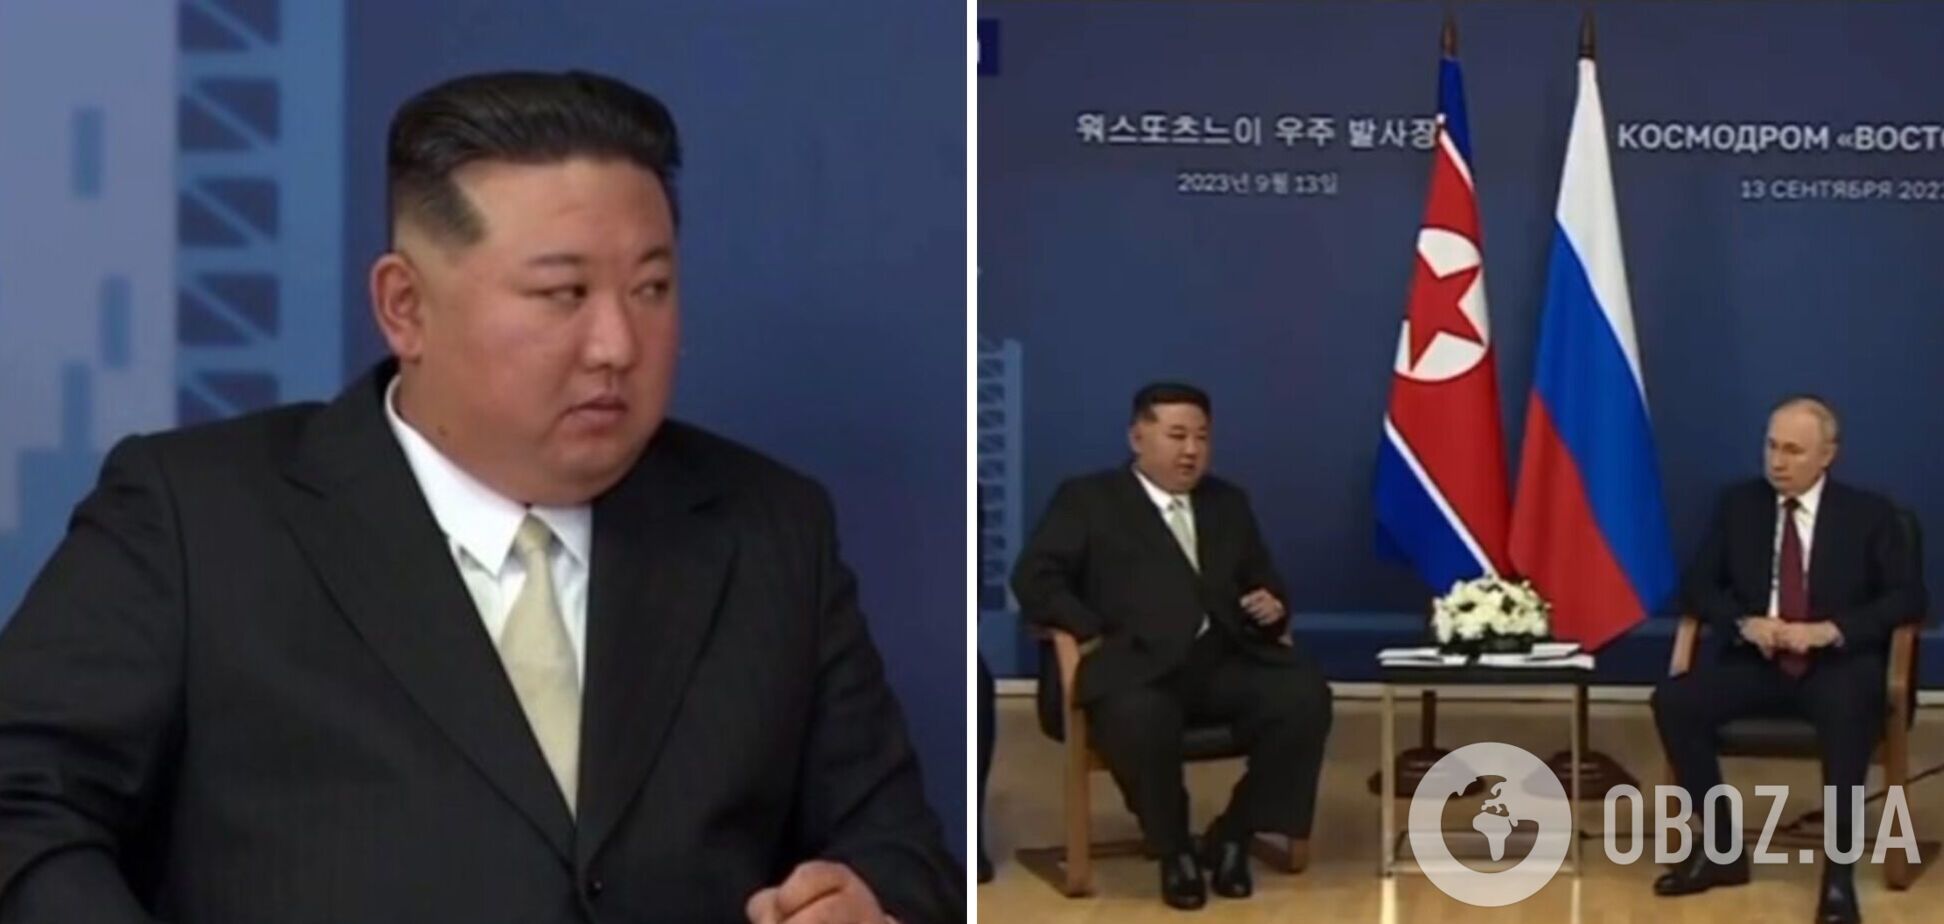 Ким Чен Ын на встрече с Путиным заявил, что РФ 'поднялась на священную борьбу за свой суверенитет'. Видео